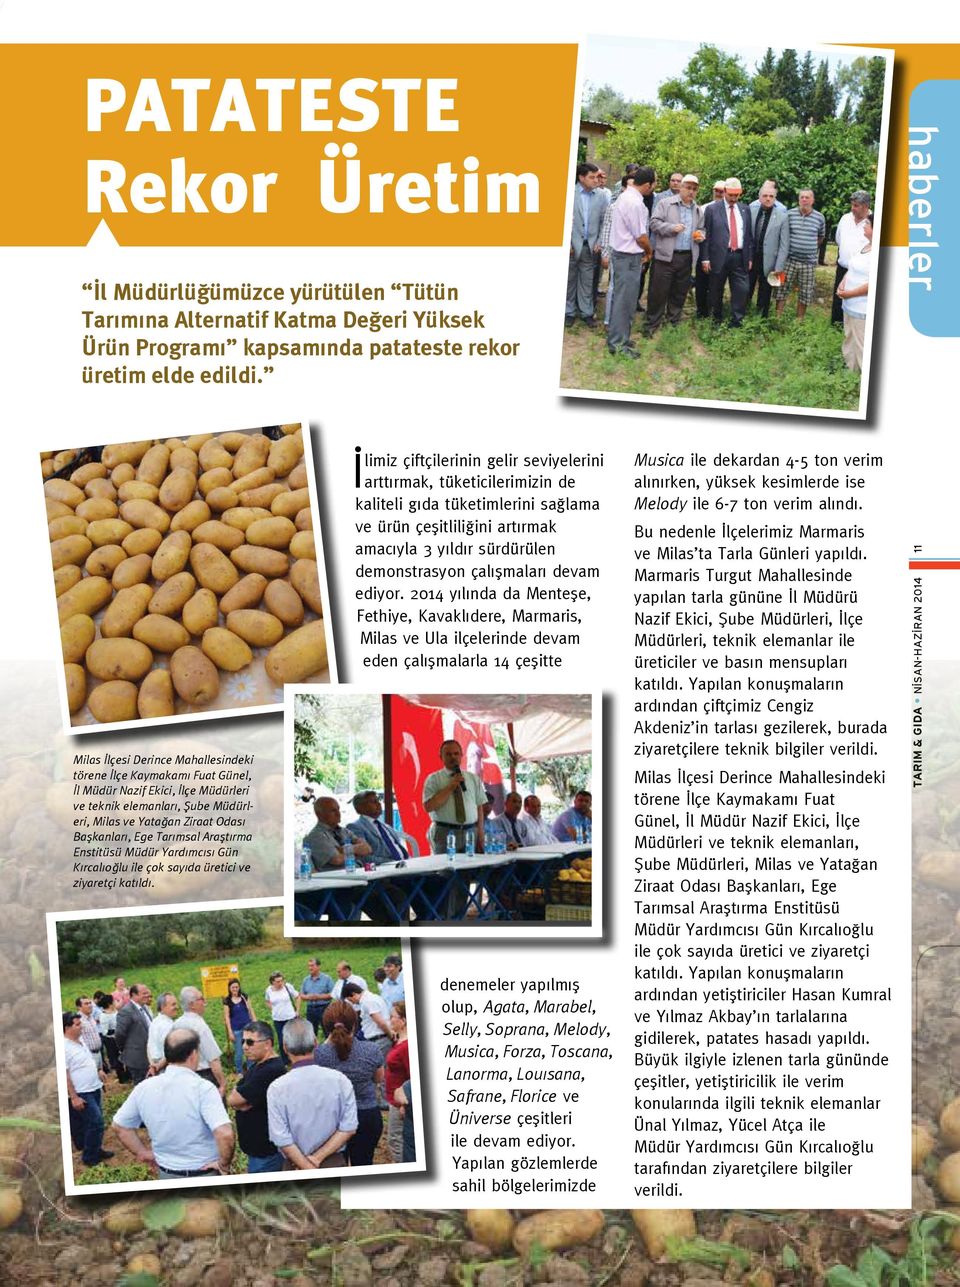 Tarımsal Araştırma Enstitüsü Müdür Yardımcısı Gün Kırcalıoğlu ile çok sayıda üretici ve ziyaretçi katıldı.